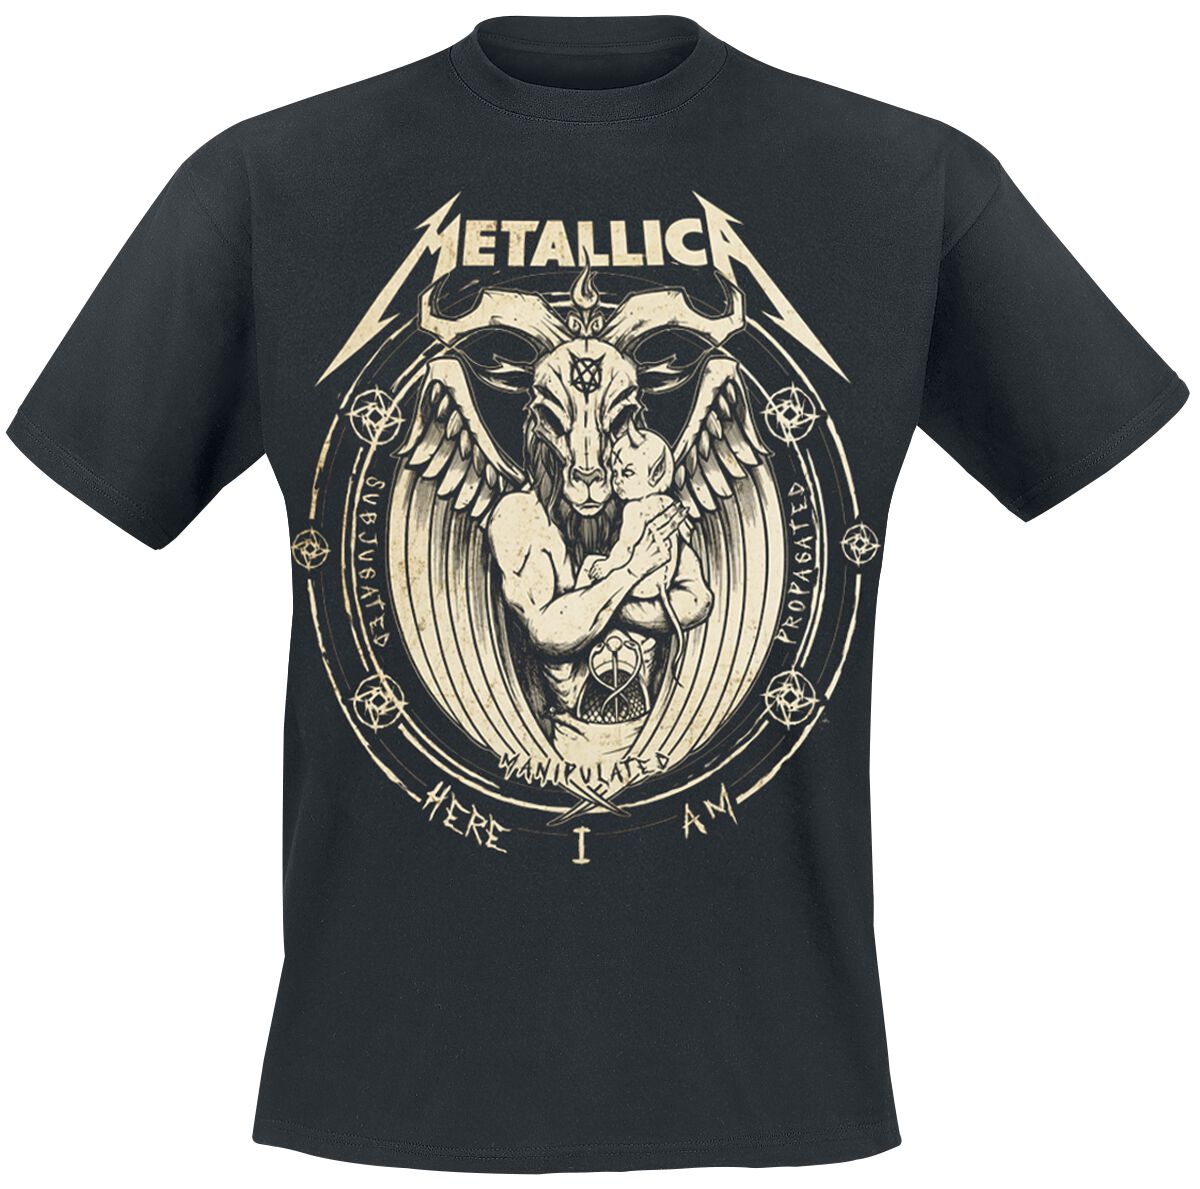 Metallica T-Shirt - Darkness Son - S bis 5XL - für Männer - Größe XXL - schwarz  - Lizenziertes Merchandise!